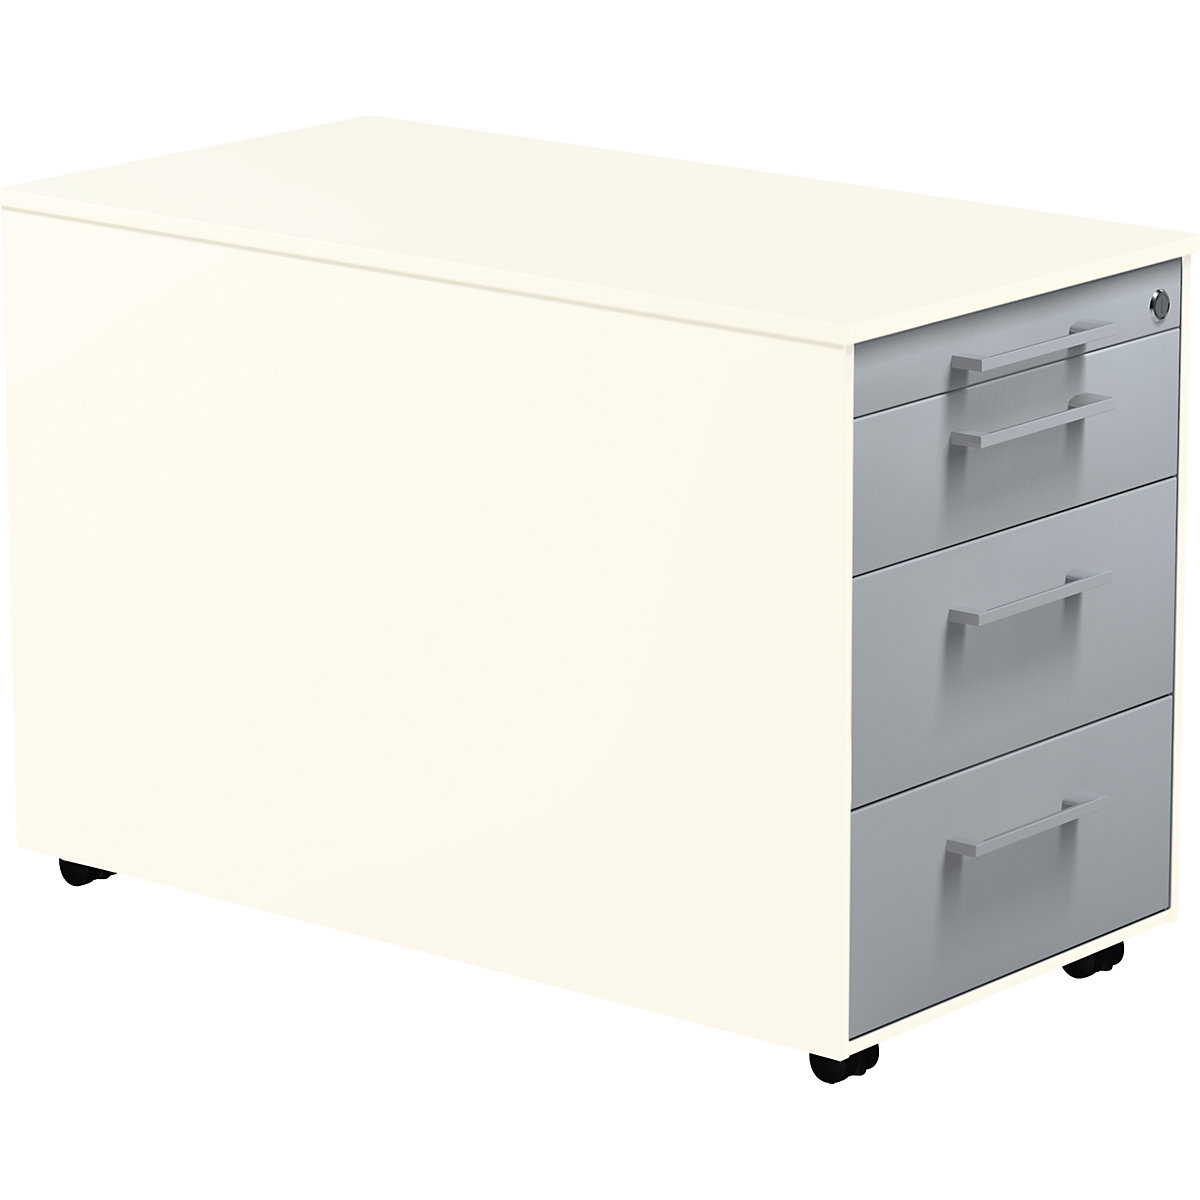 Casetieră cu sertare pe role – mauser, î. x ad. 520 x 800 mm, 3 sertare pentru materiale, alb pur / argintiu aluminiu / alb pur